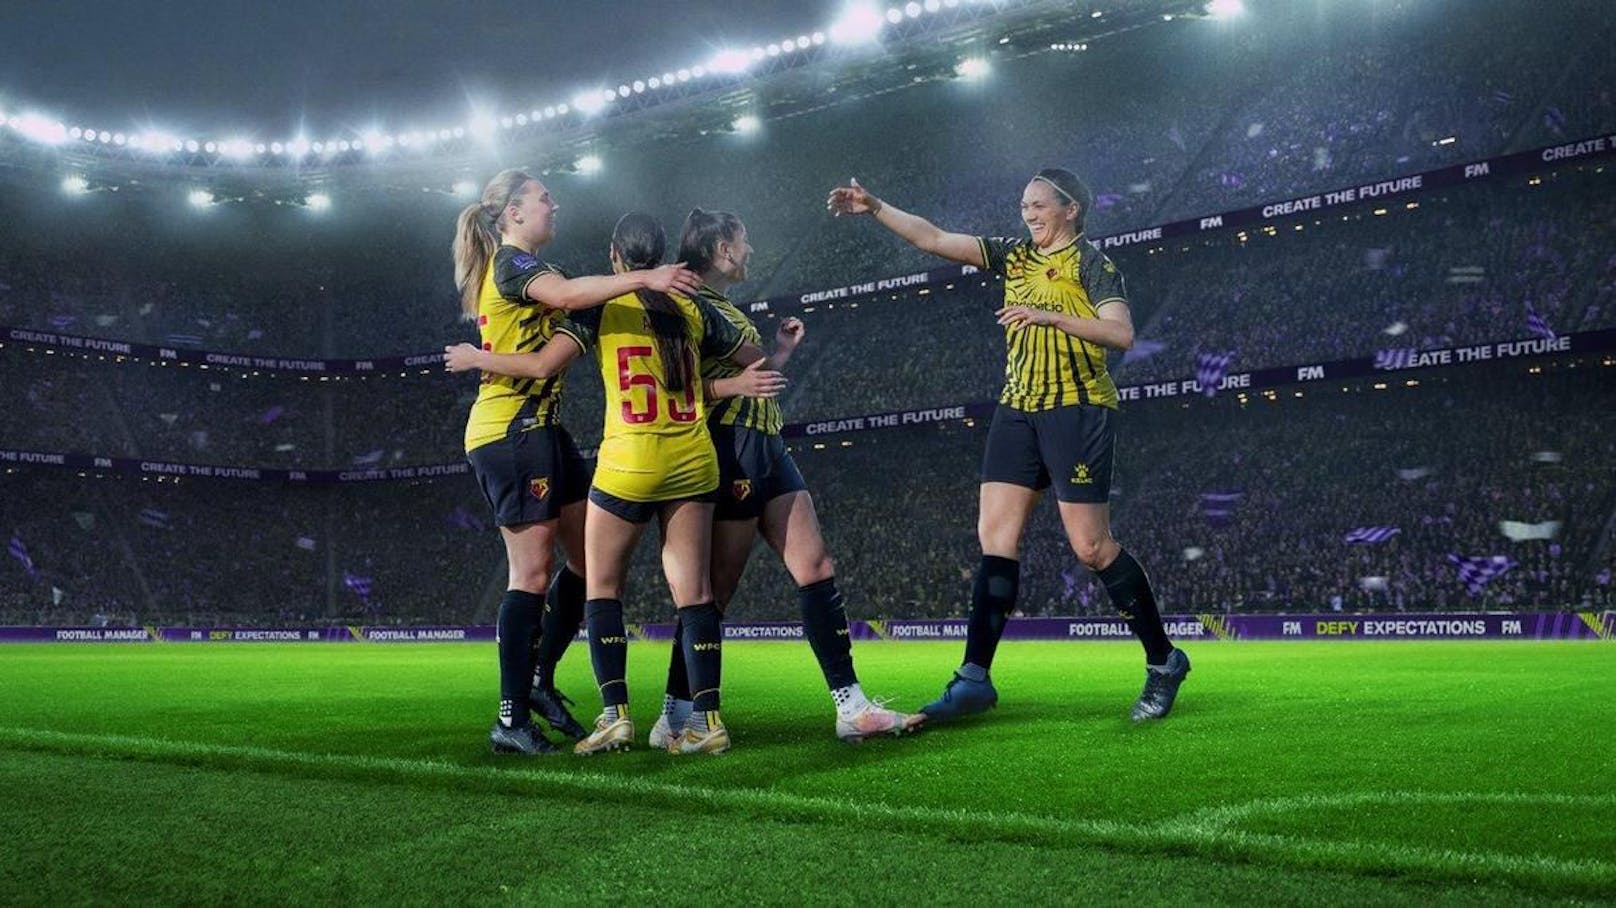 "Wir wollen den Frauenfußball einführen" – so wirbt derzeit der Entwickler vom Game "Football Manager".